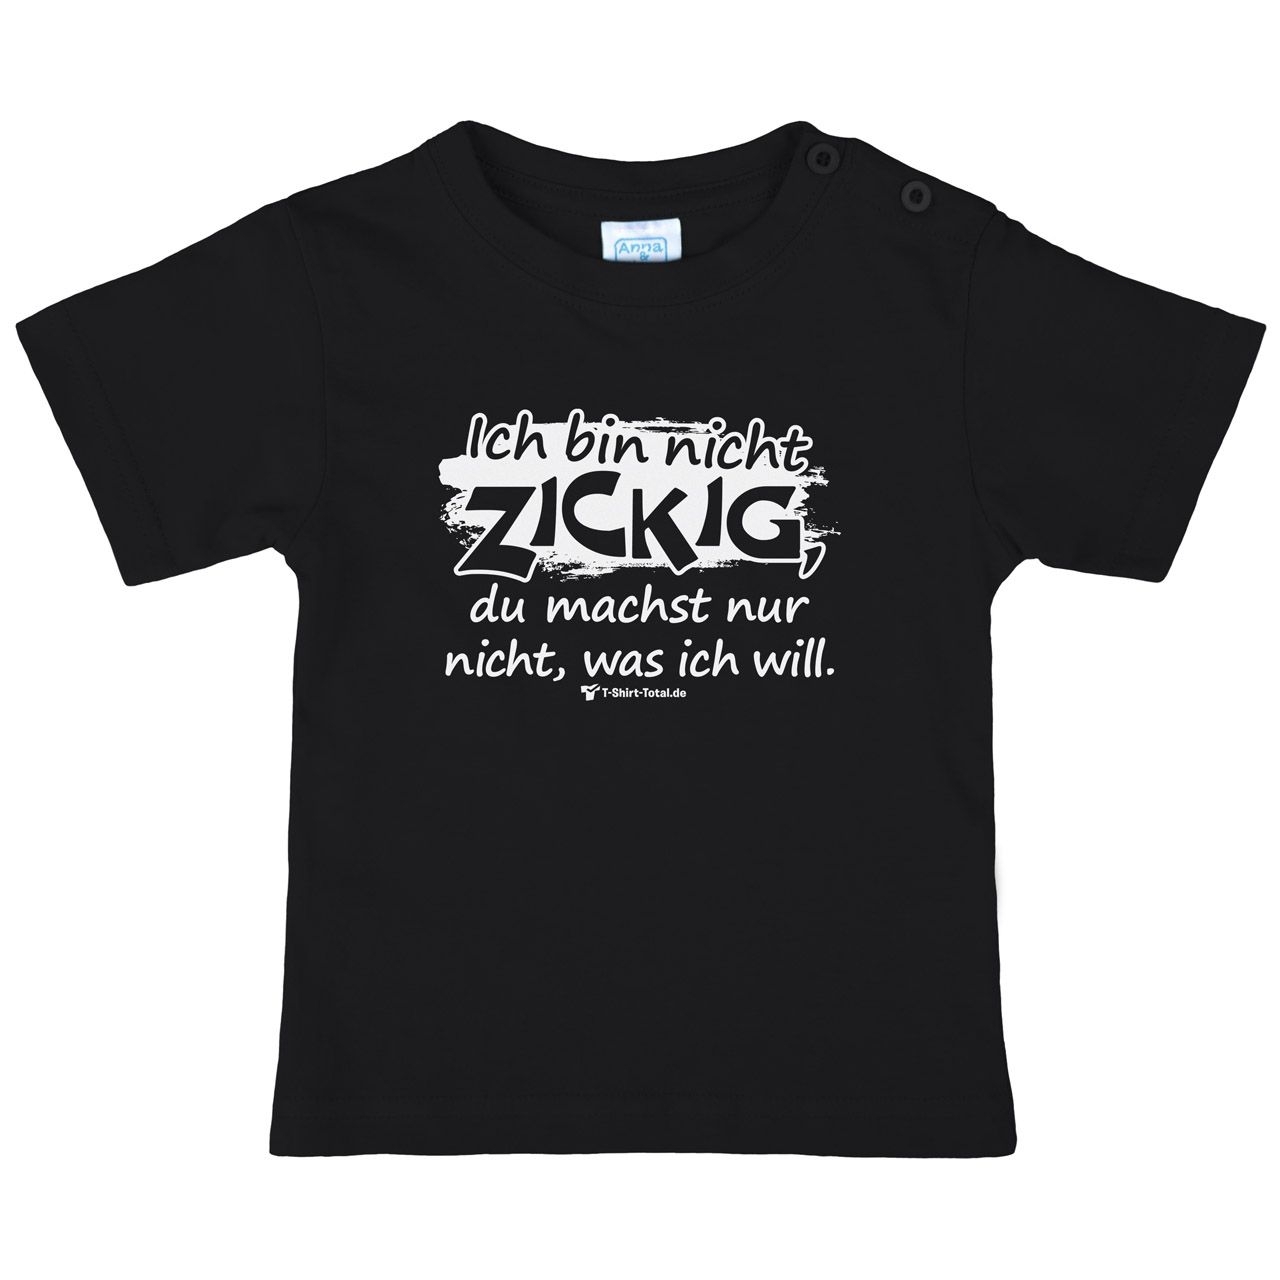 Bin nicht zickig Kinder T-Shirt schwarz 92